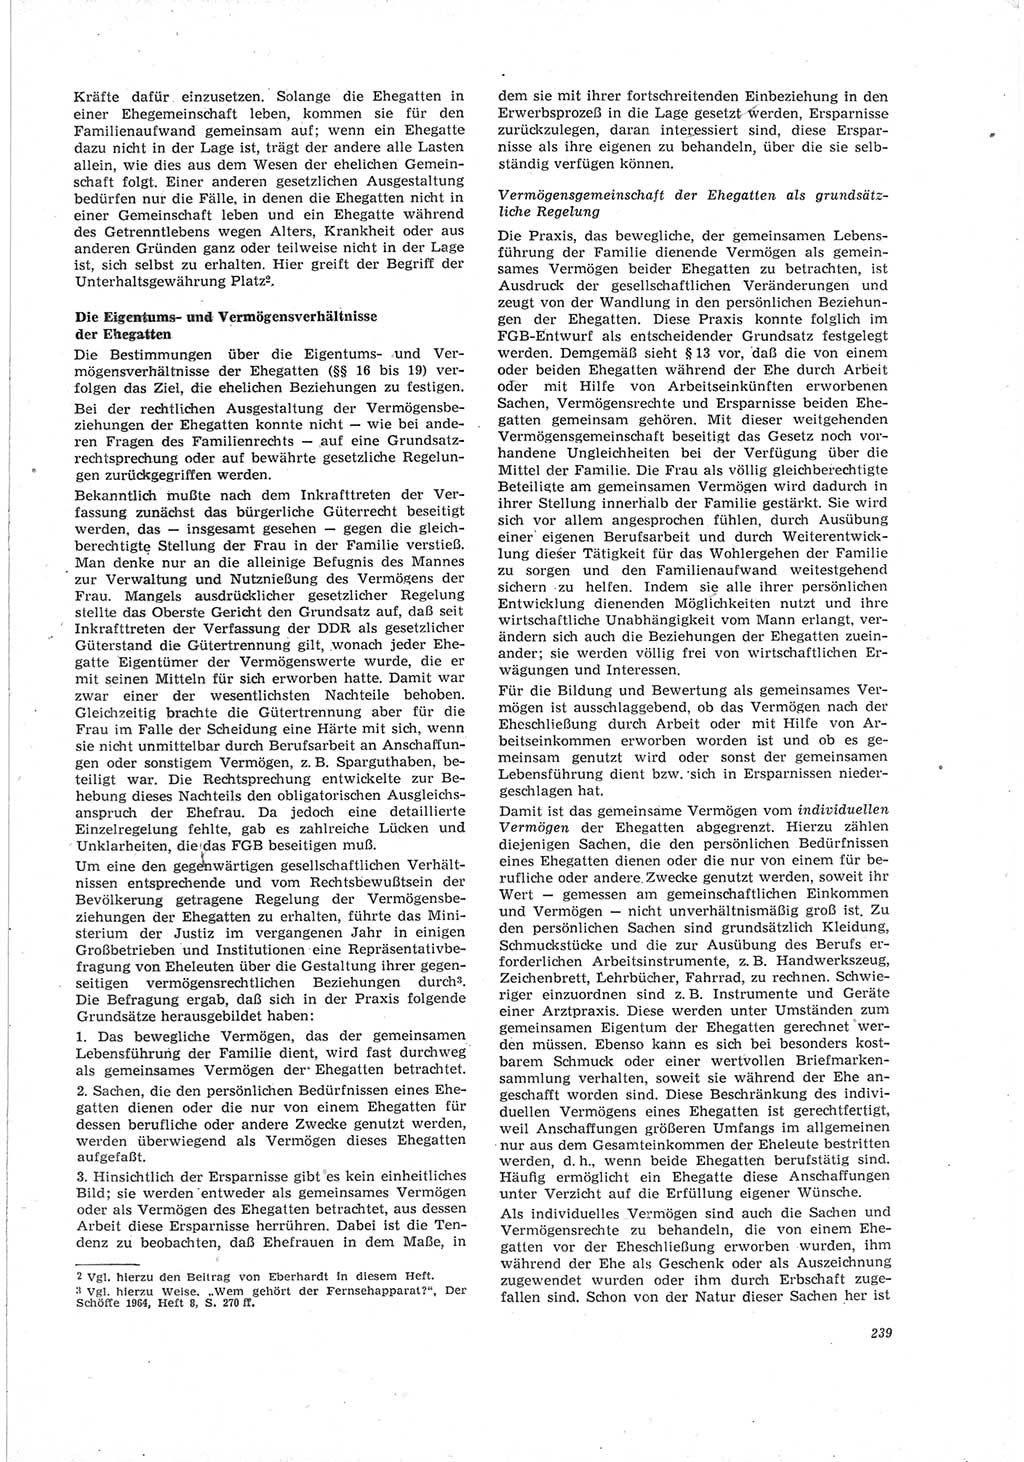 Neue Justiz (NJ), Zeitschrift für Recht und Rechtswissenschaft [Deutsche Demokratische Republik (DDR)], 19. Jahrgang 1965, Seite 239 (NJ DDR 1965, S. 239)